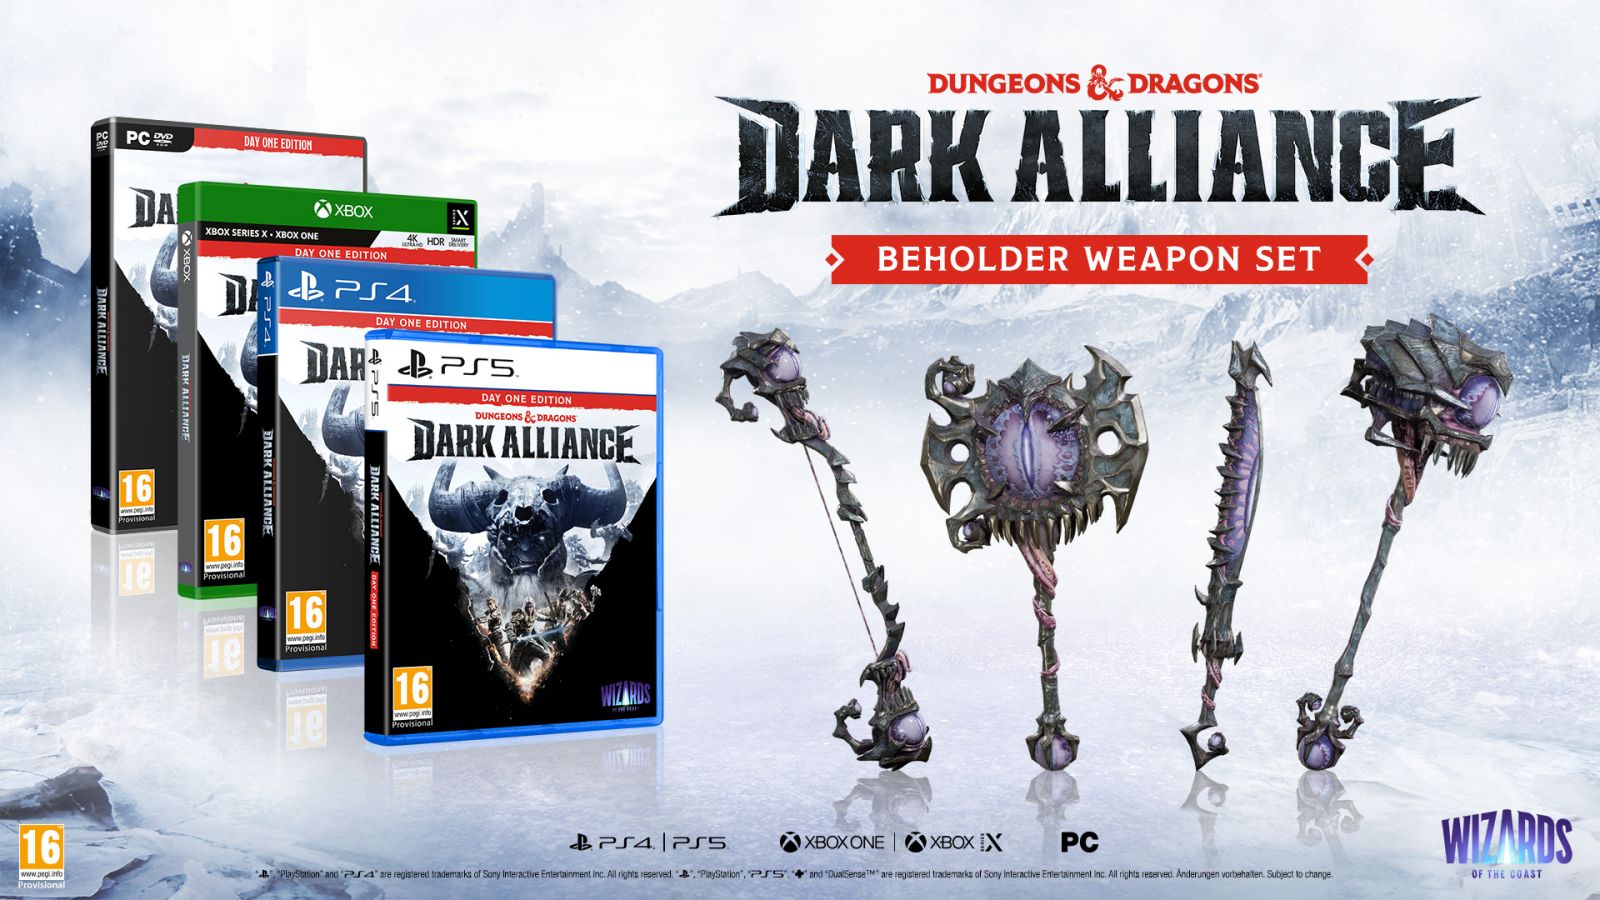 Dungeons & Dragons: Dark Alliance, Day One Edition